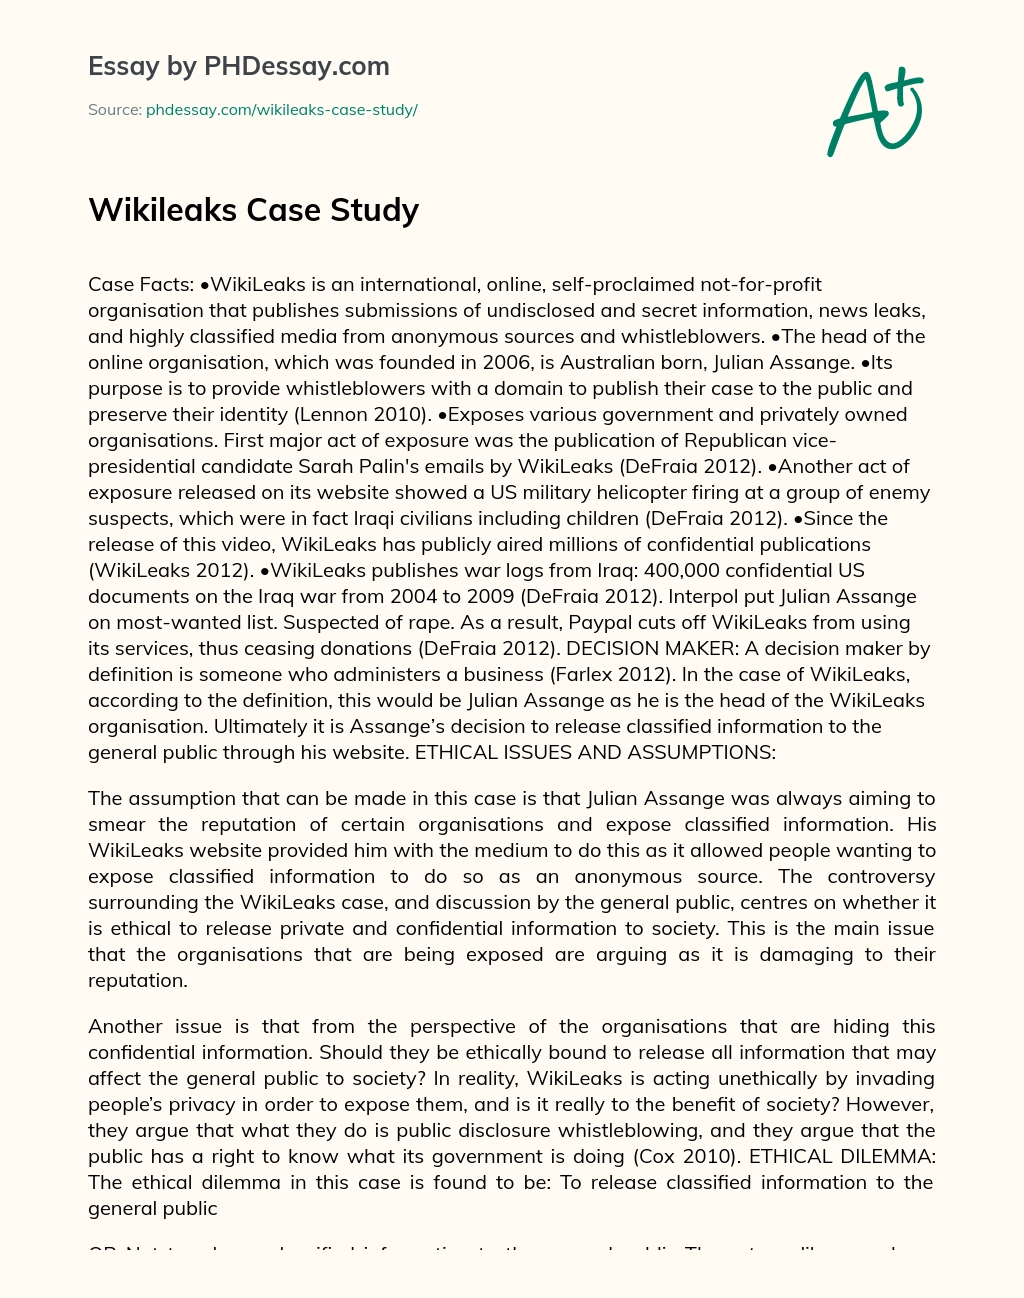 Wikileaks Case Study essay